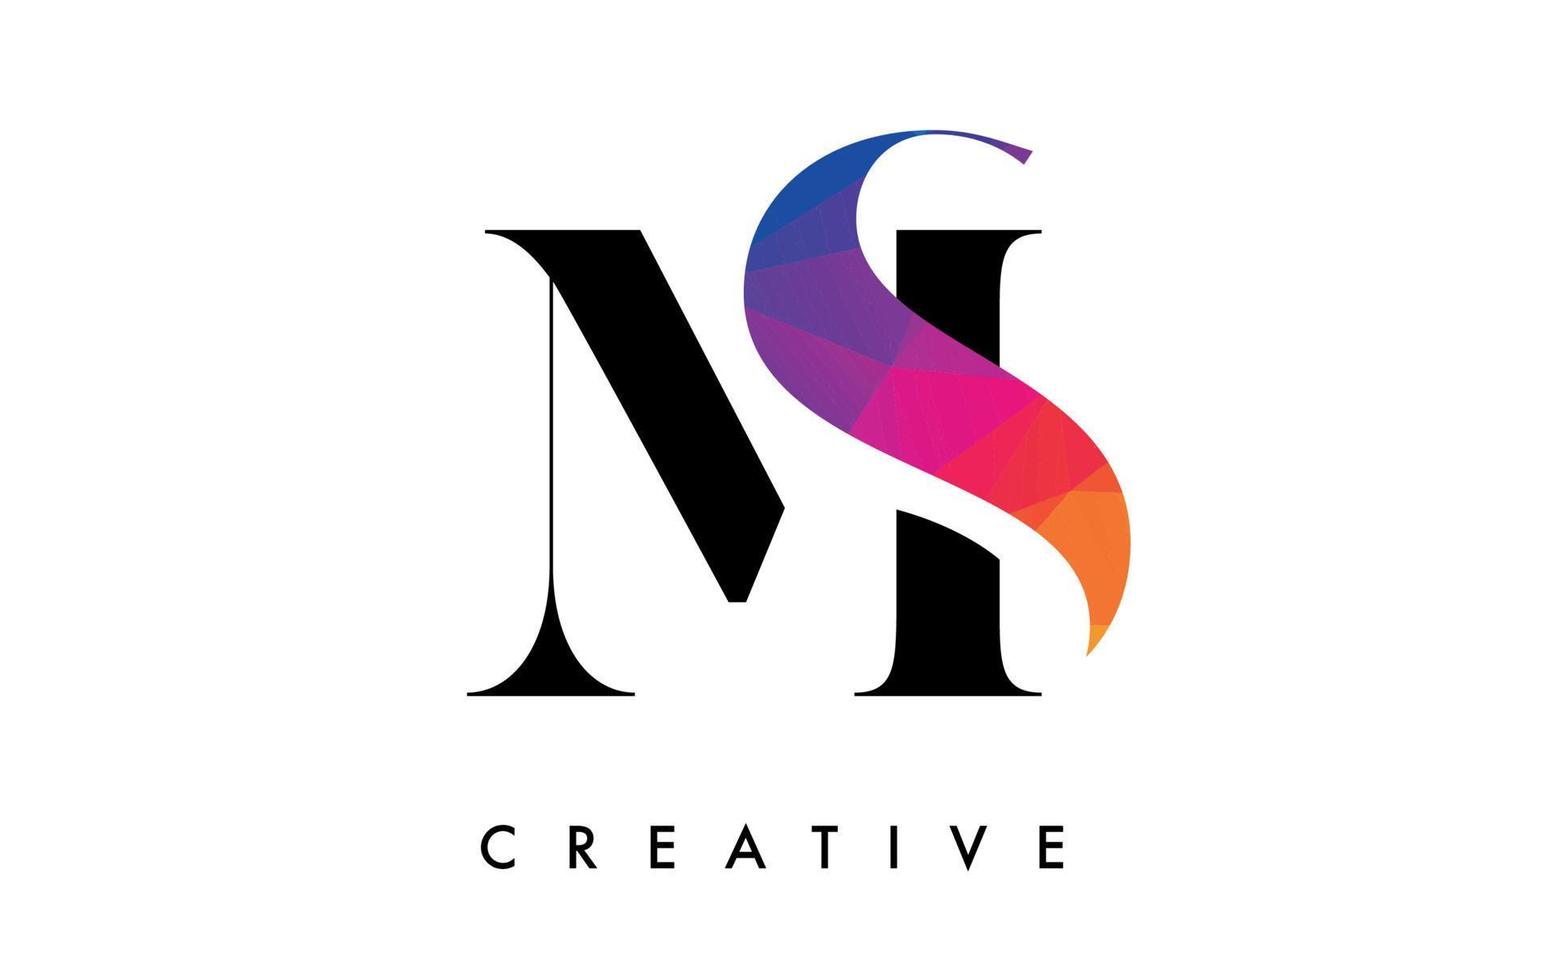 diseño de letras ms con corte creativo y textura colorida del arco iris vector